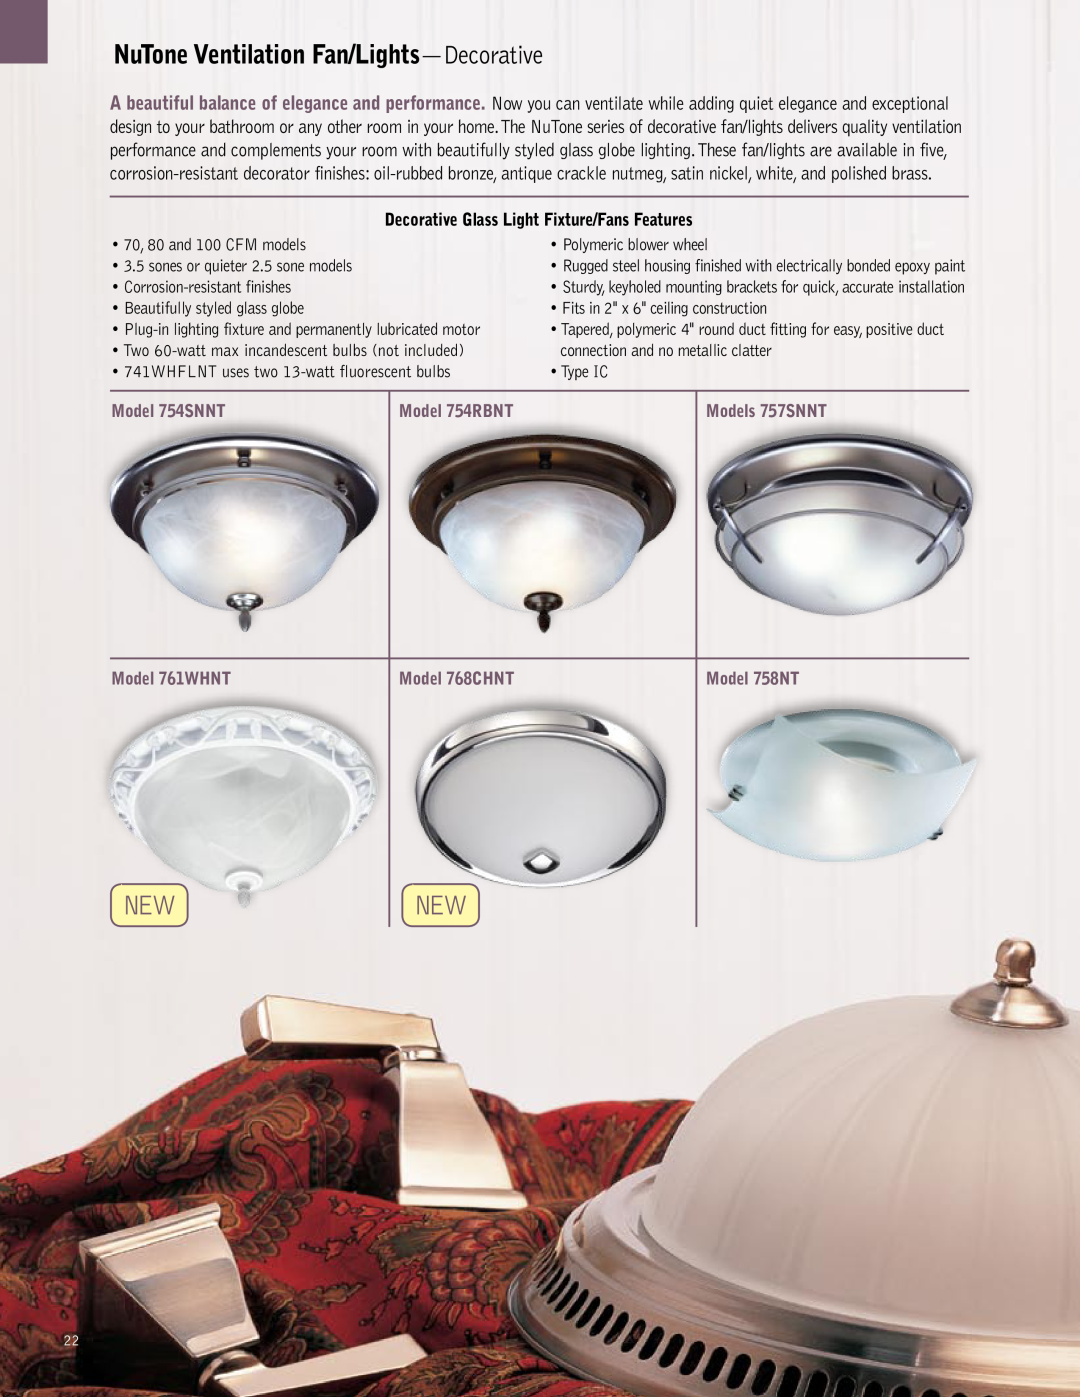 NuTone QTXN, QTREN NuTone Ventilation Fan/Lights-Decorative, Decorative Glass Light Fixture/Fans Features, Model 754SNNT 